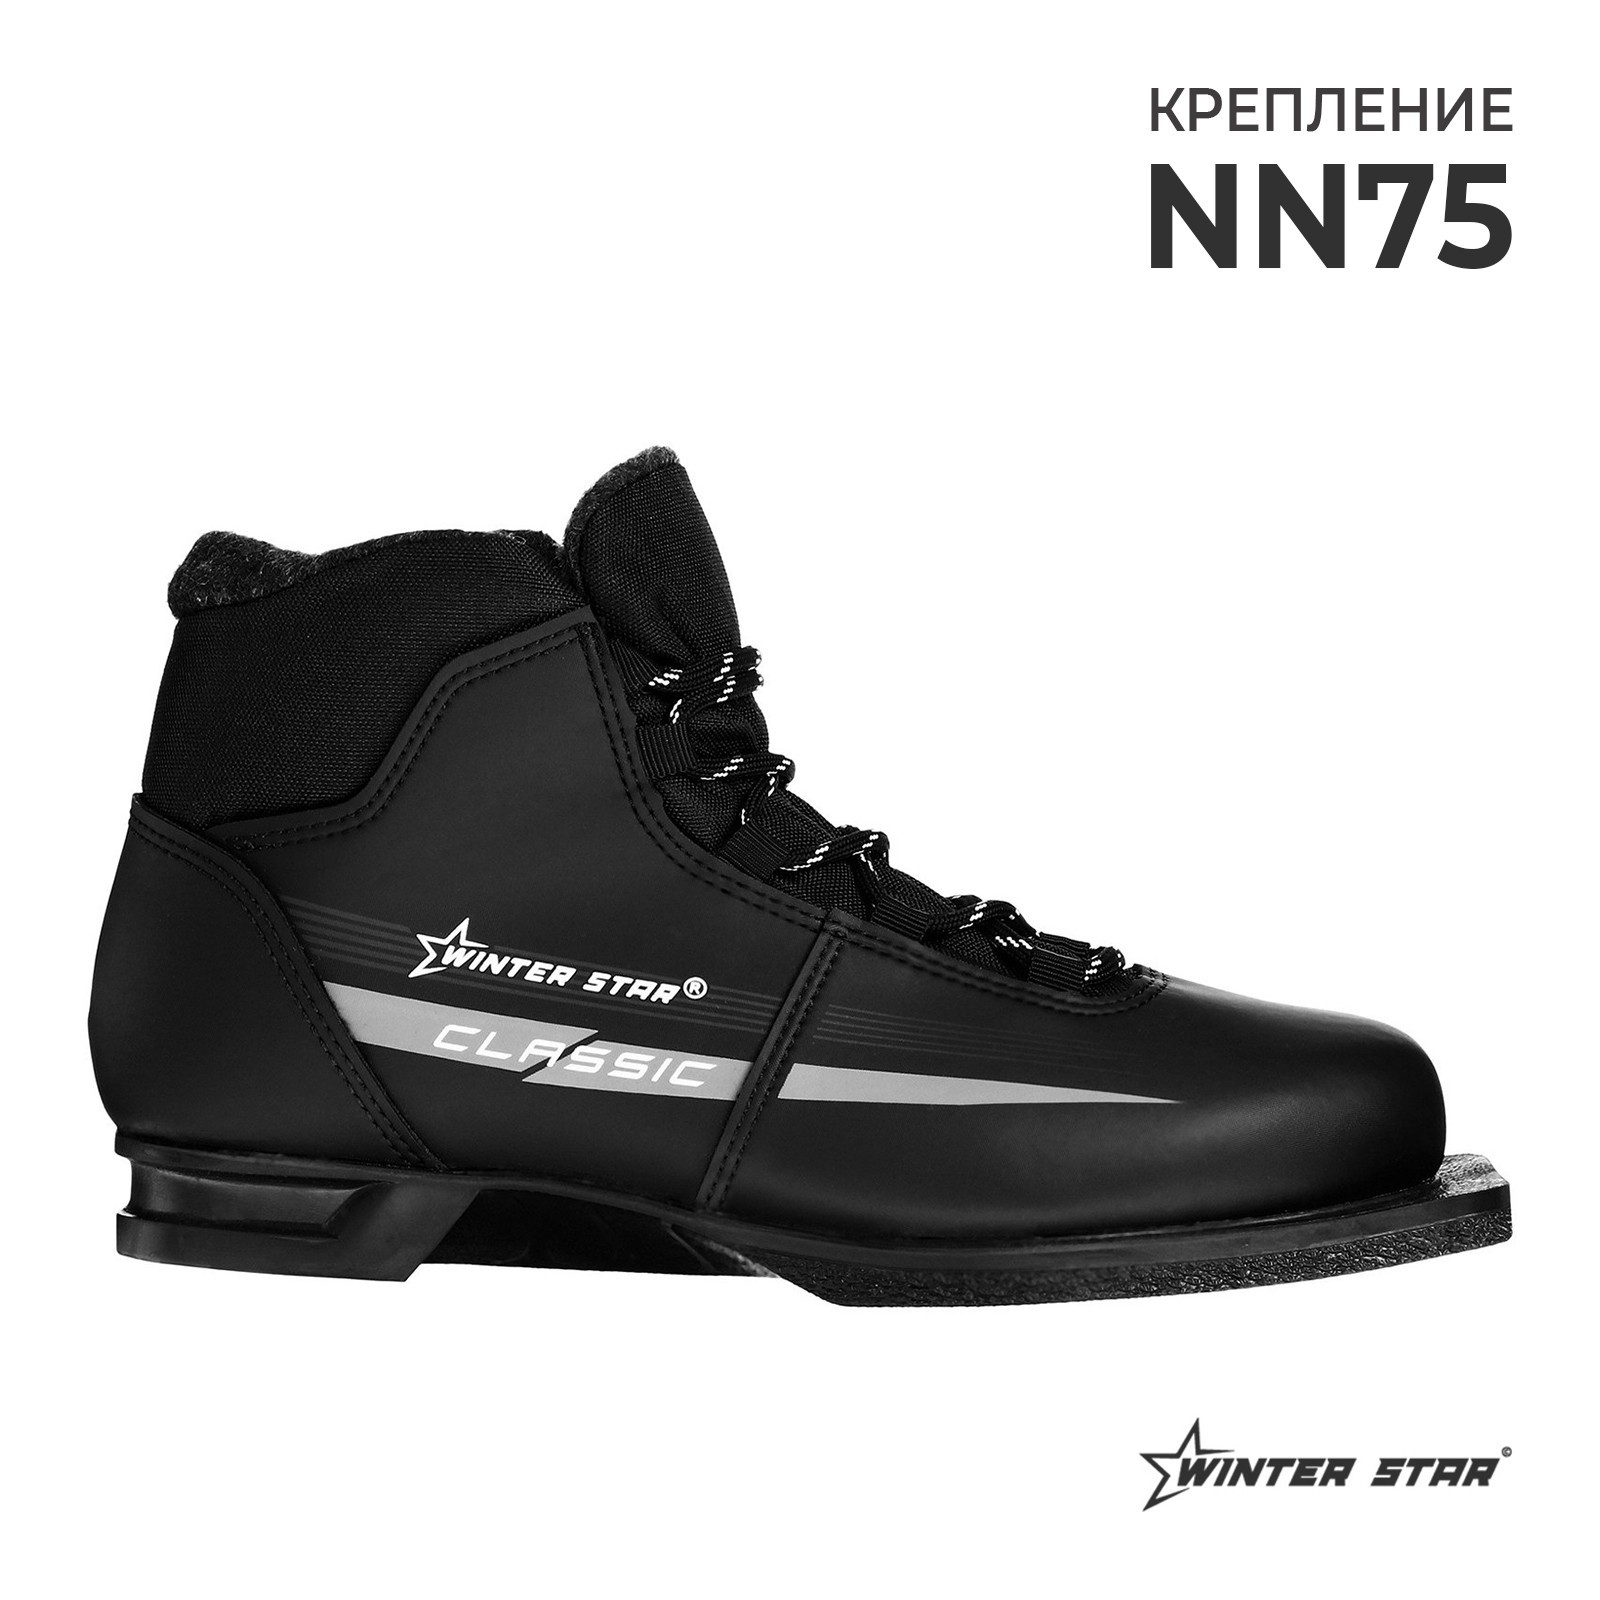 Ботинки лыжные Winter Star classic, NN75, р. 35, цвет черный, лого серый